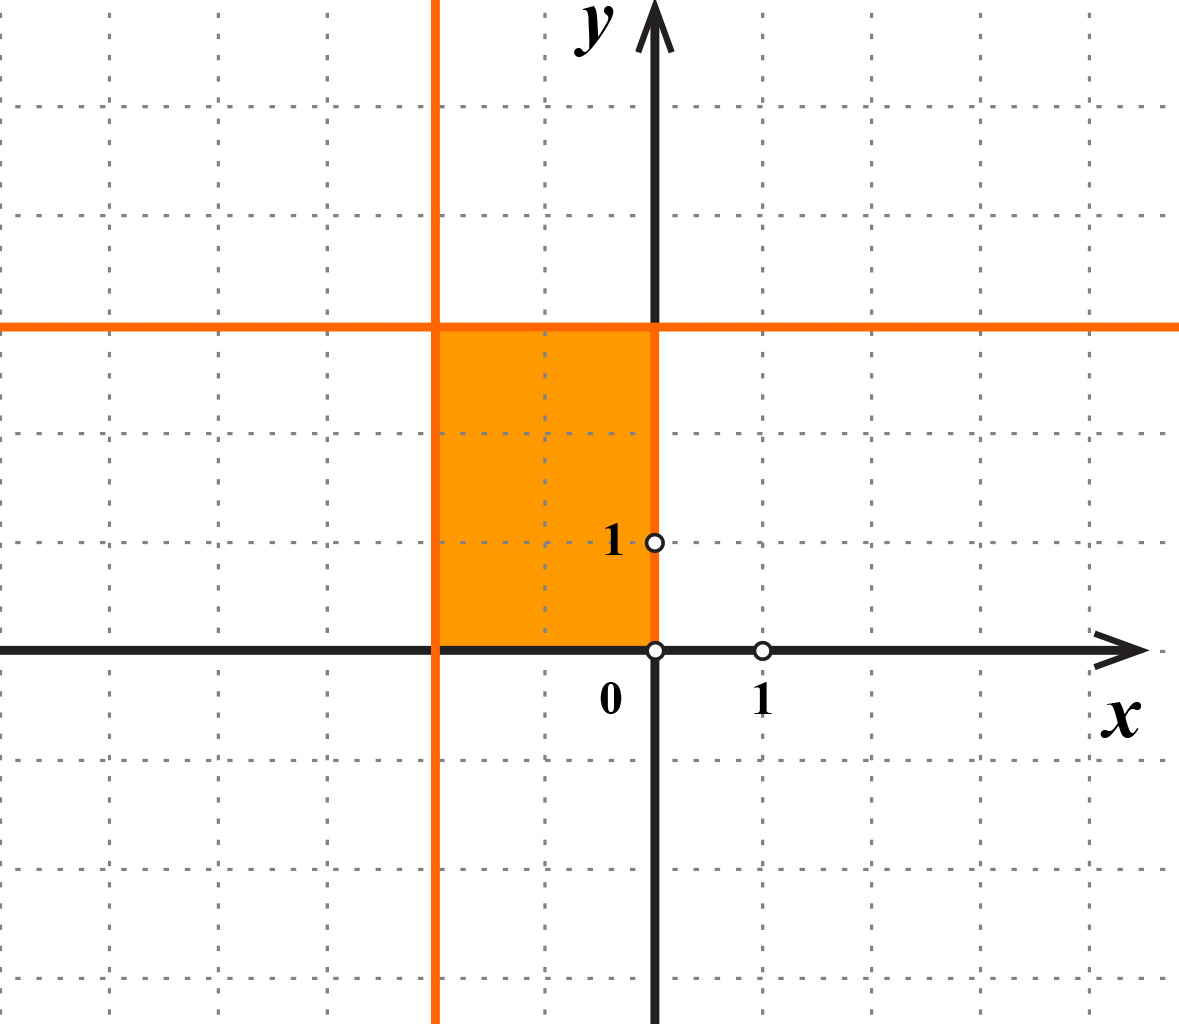 Na slici je pravokutnik u koordinatnom sustavu. Stranice su usporedne s koordinatnim osima. Točke koje pripadaju pravokutniku imaju apscisu između -2 i 0 i ordinatu između 0 i 3.